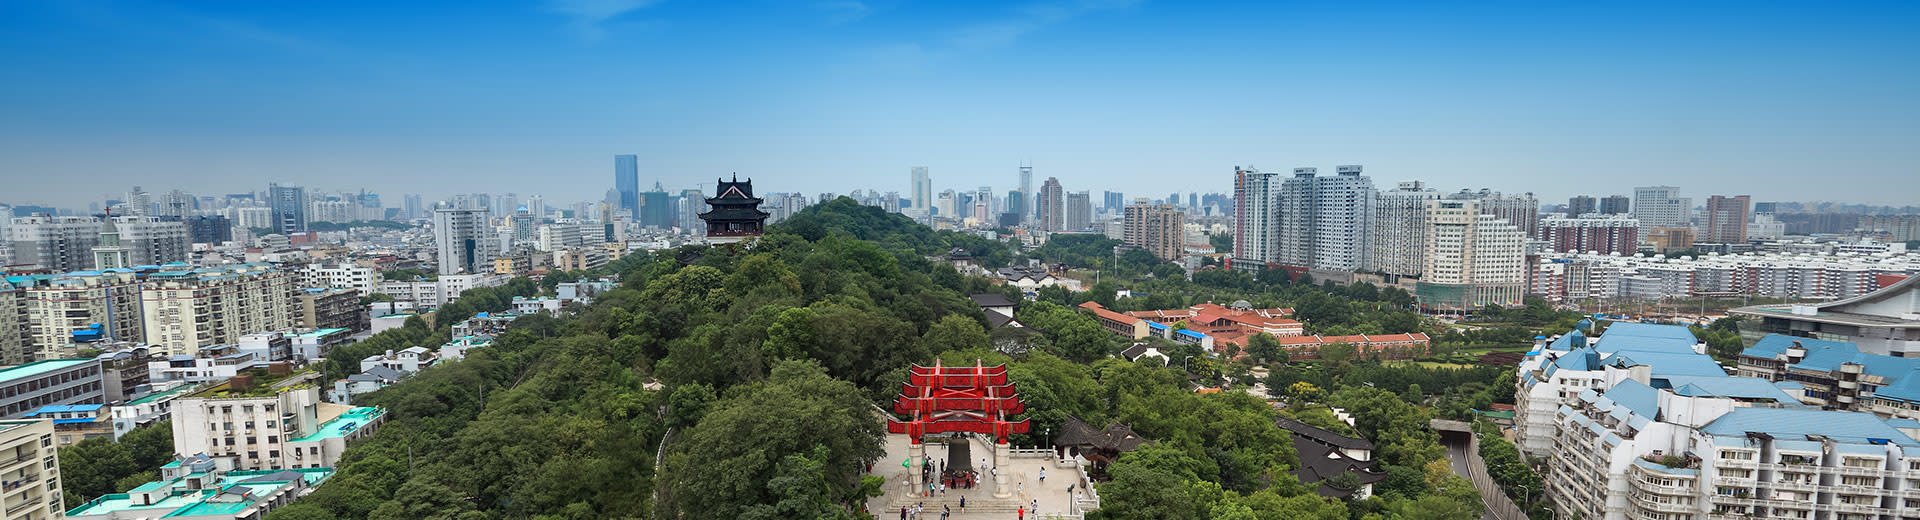 Cielos azules sobre un parque verde y la extensa ciudad de Wuhan.